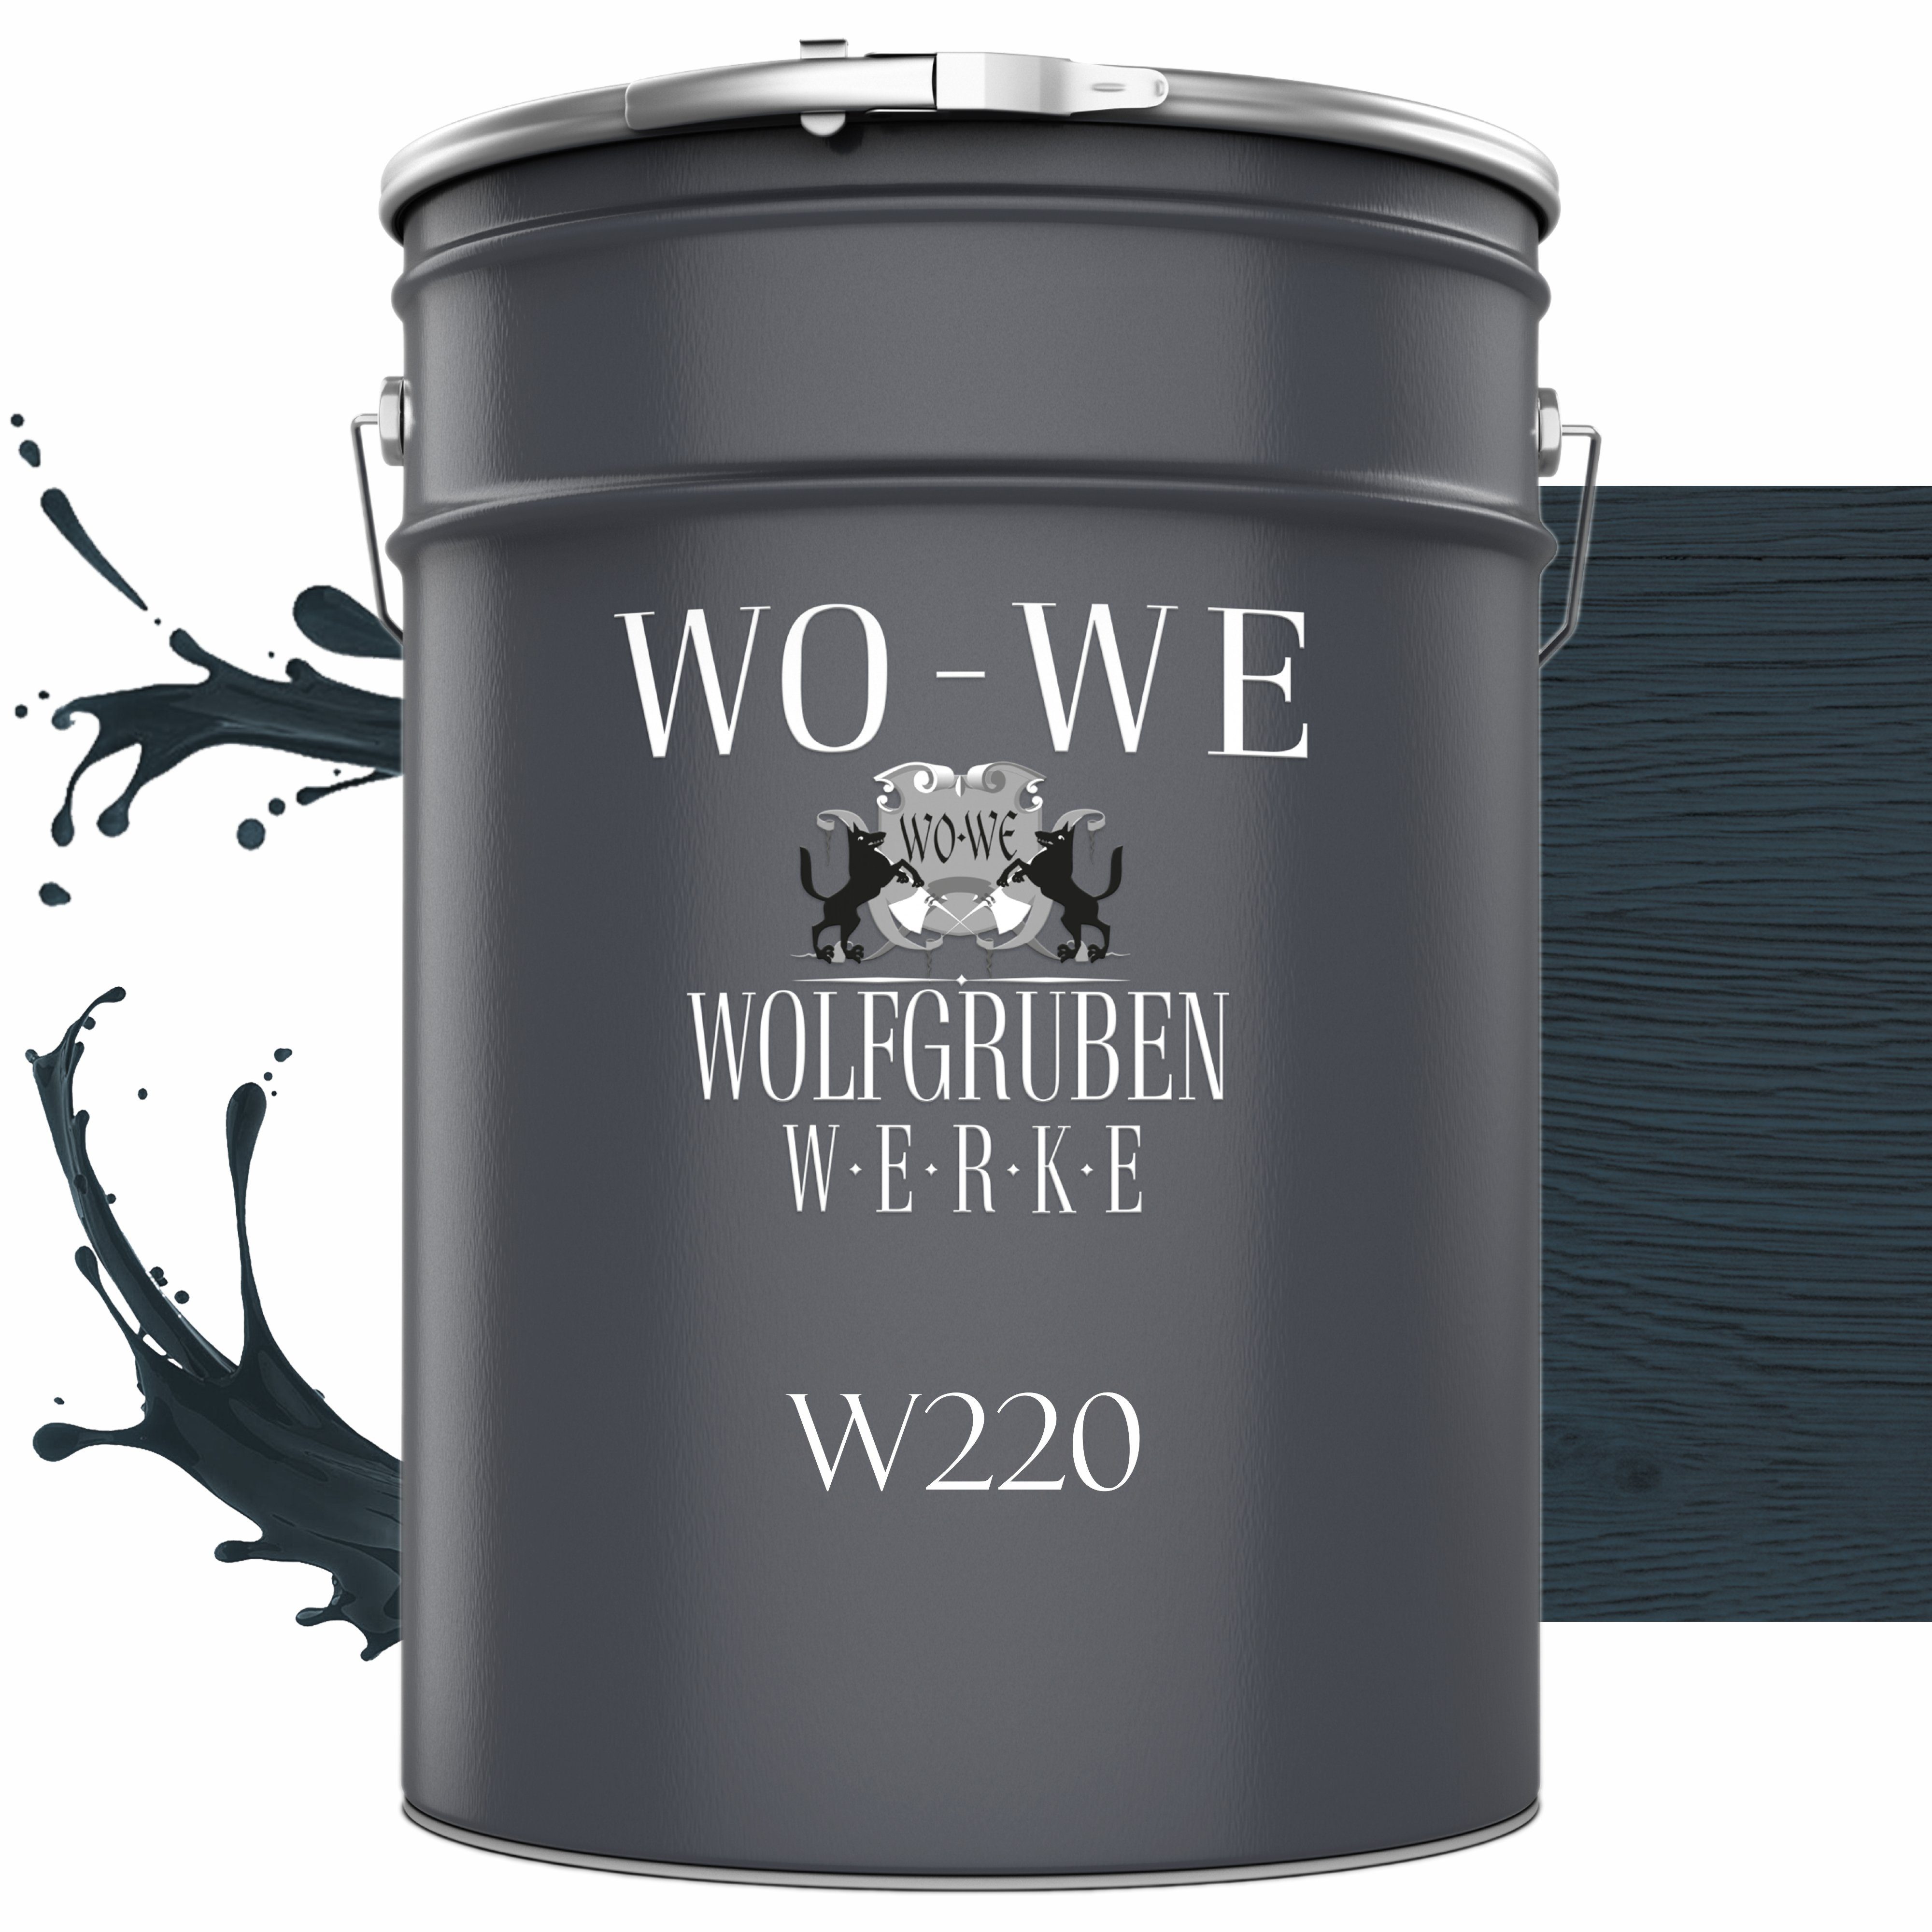 WO-WE Dickschichtlasur Holzschutzlasur 2in1 W220, Lösemittelfrei, UV-stabil Anthrazitgrau 1-2,5L, Holzlasur